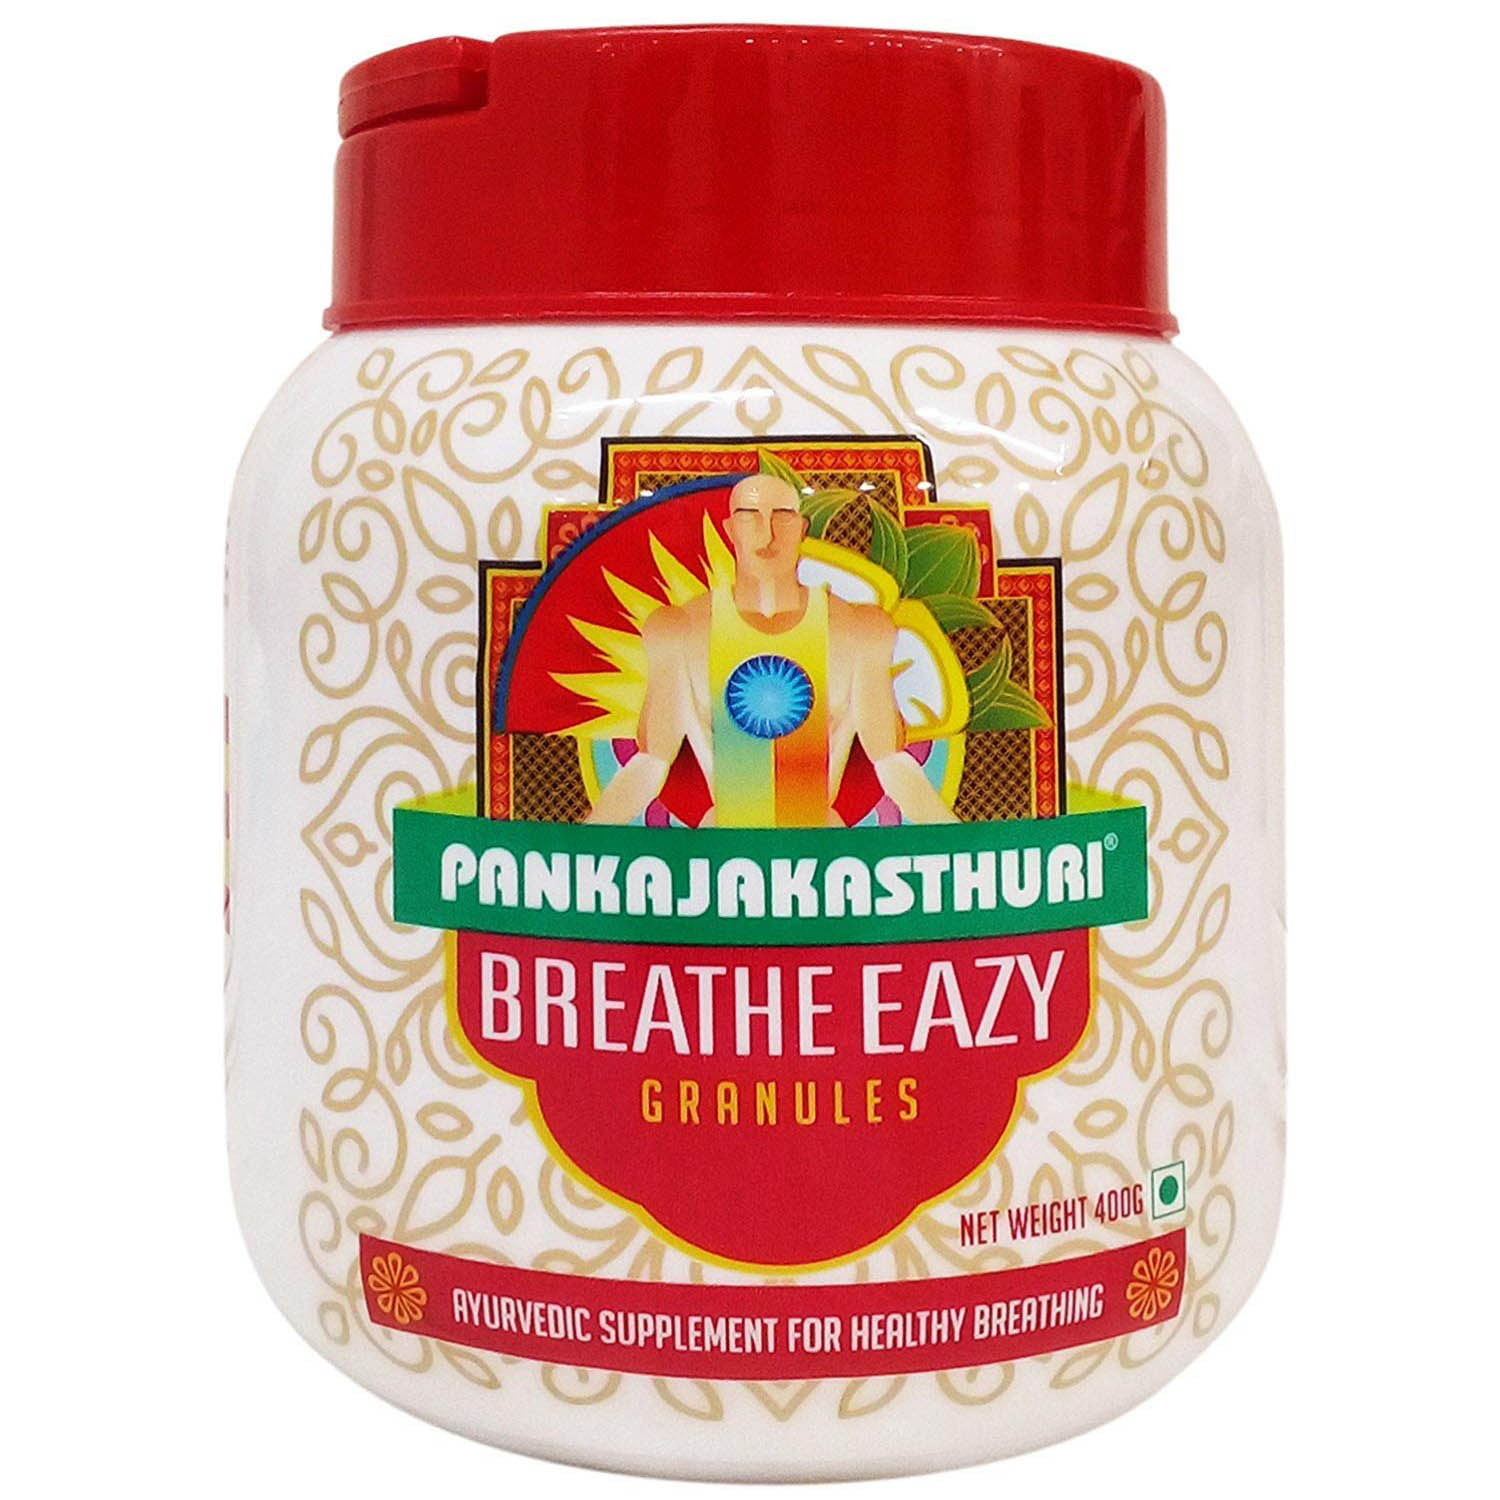 Pankajakasthuri Breathe Easy Granules, 400 gm, Pack of 1 